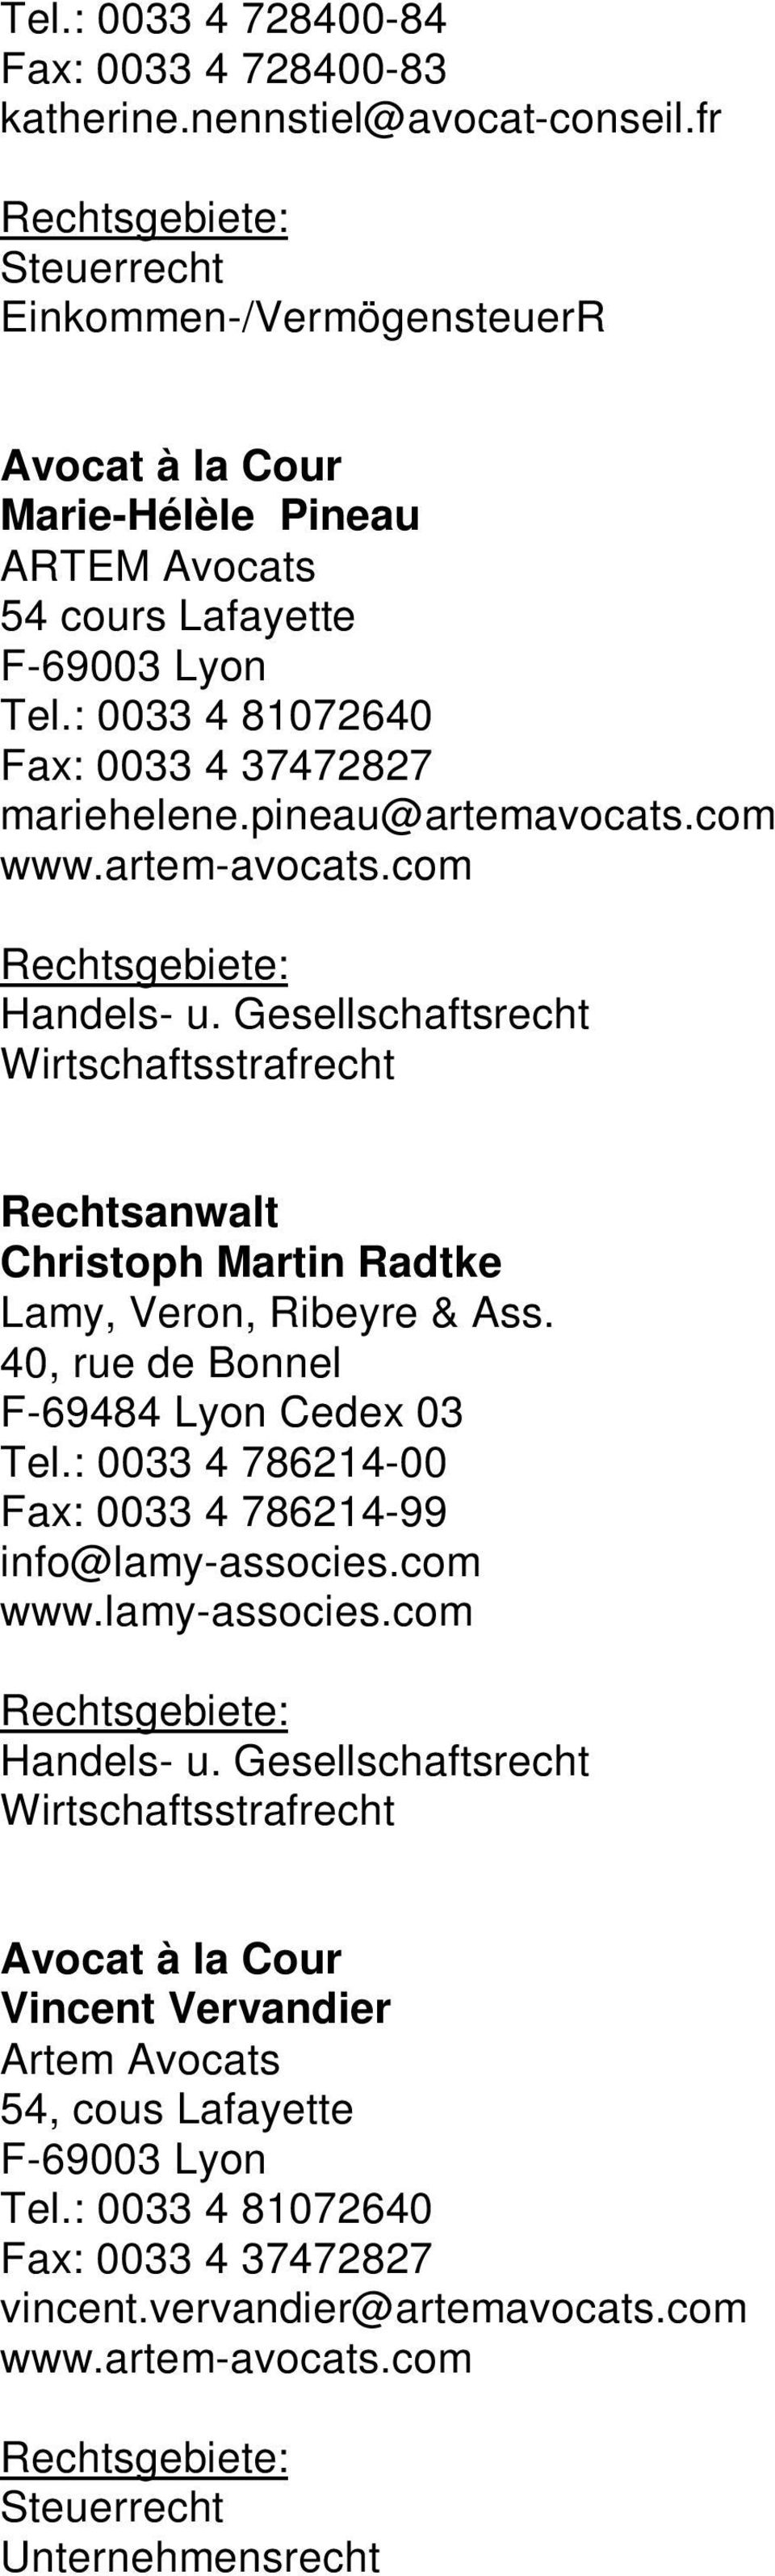 com www.artem-avocats.com Handels- u. Gesellschaftsrecht Wirtschaftsstrafrecht Christoph Martin Radtke Lamy, Veron, Ribeyre & Ass. 40, rue de Bonnel F-69484 Lyon Cedex 03 Tel.